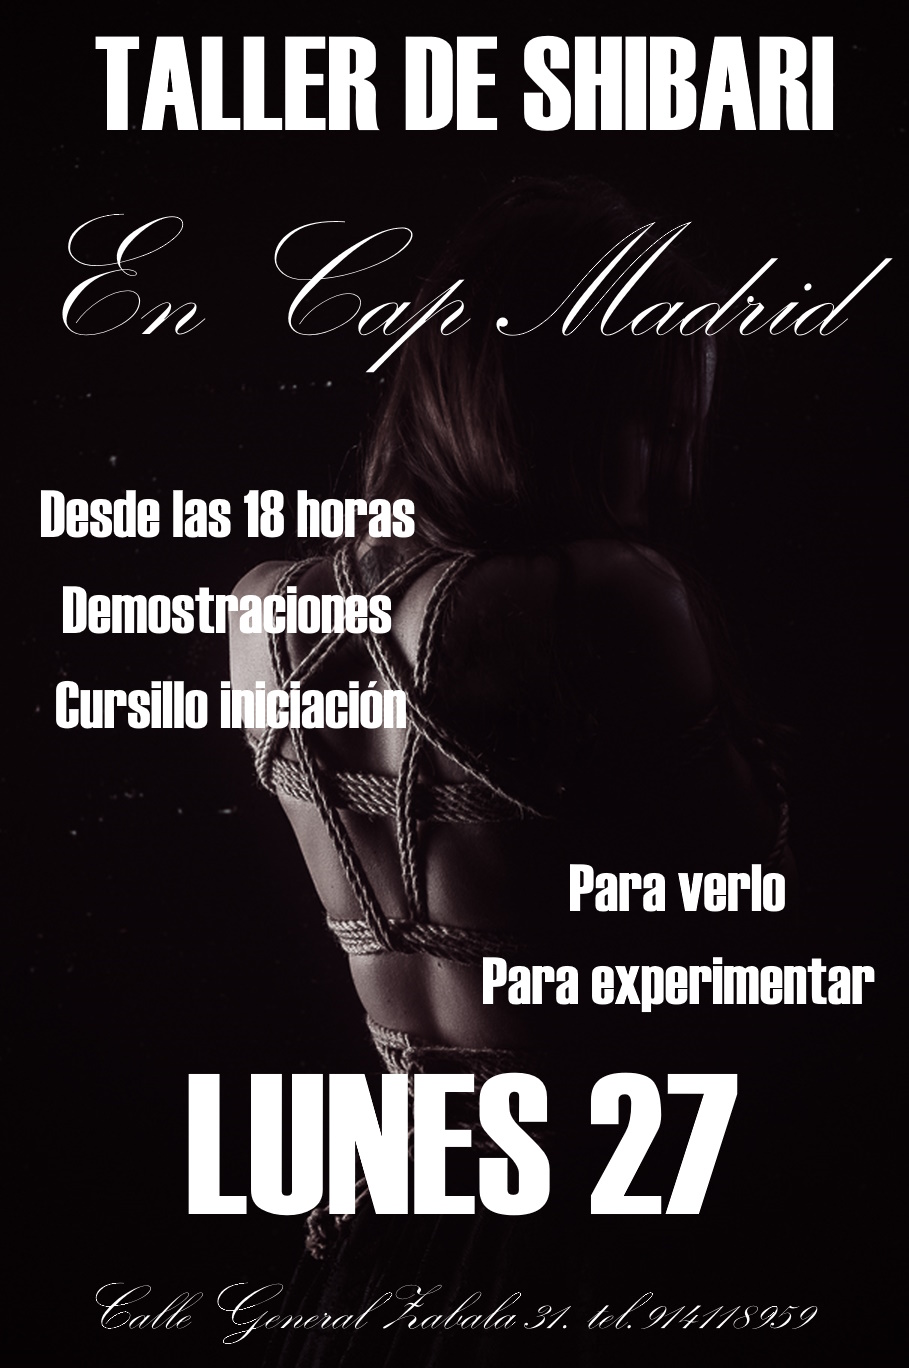 ¡¡¡¡TALLER DE INICIACIÓN AL SHIBARI EN CAP MADRID. LUNES 27!!!!